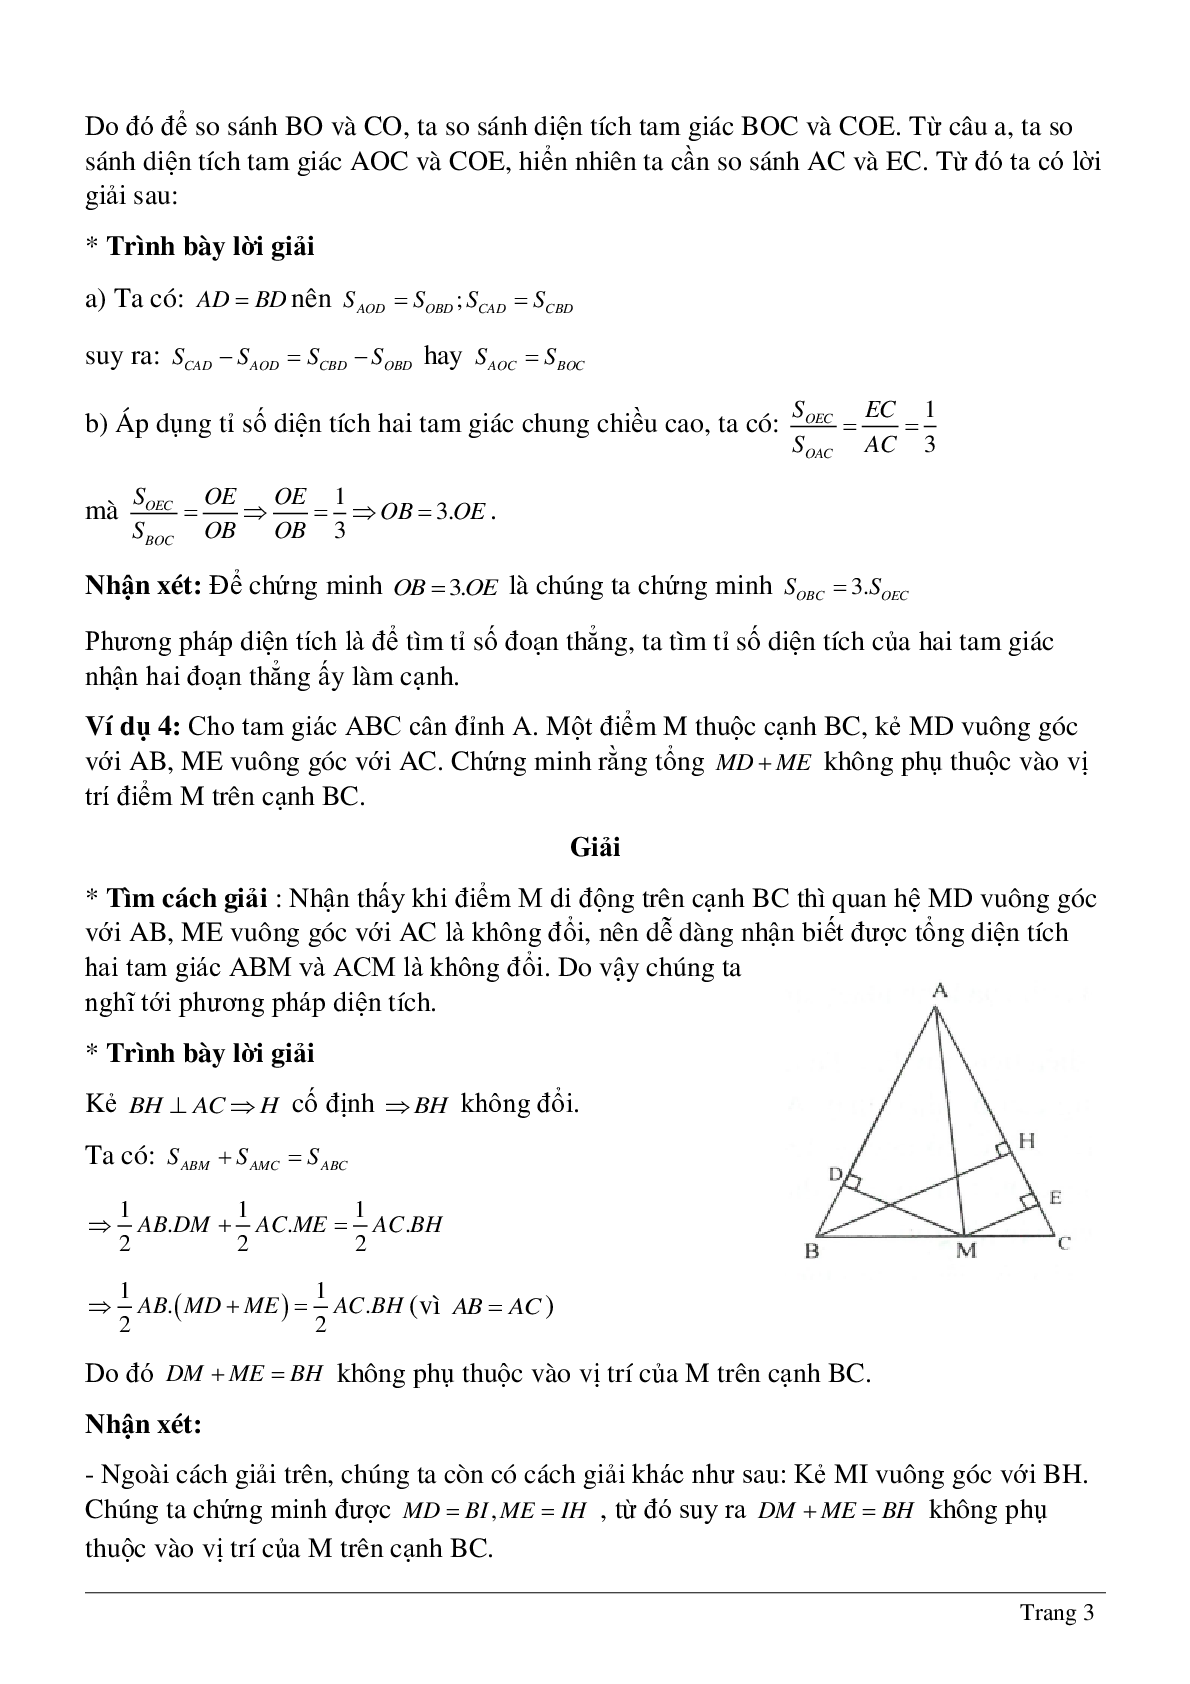 Phương pháp diện tích - Hình học toán 8 (trang 3)